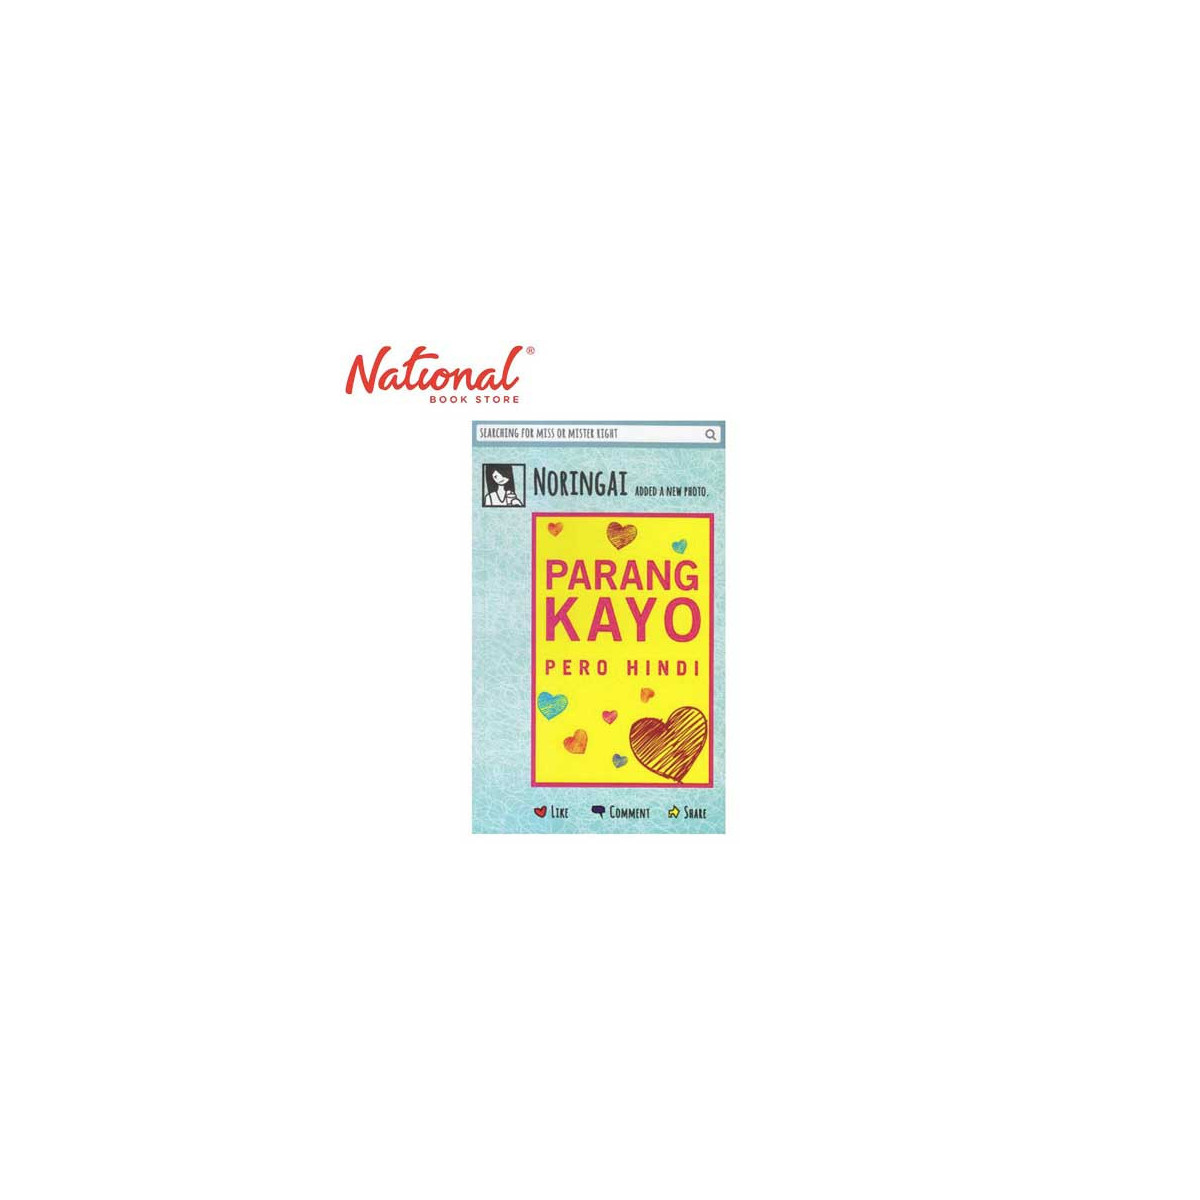 Parang Kayo Pero Hindi by Noreen Capili - Trade Paperback - Relationships